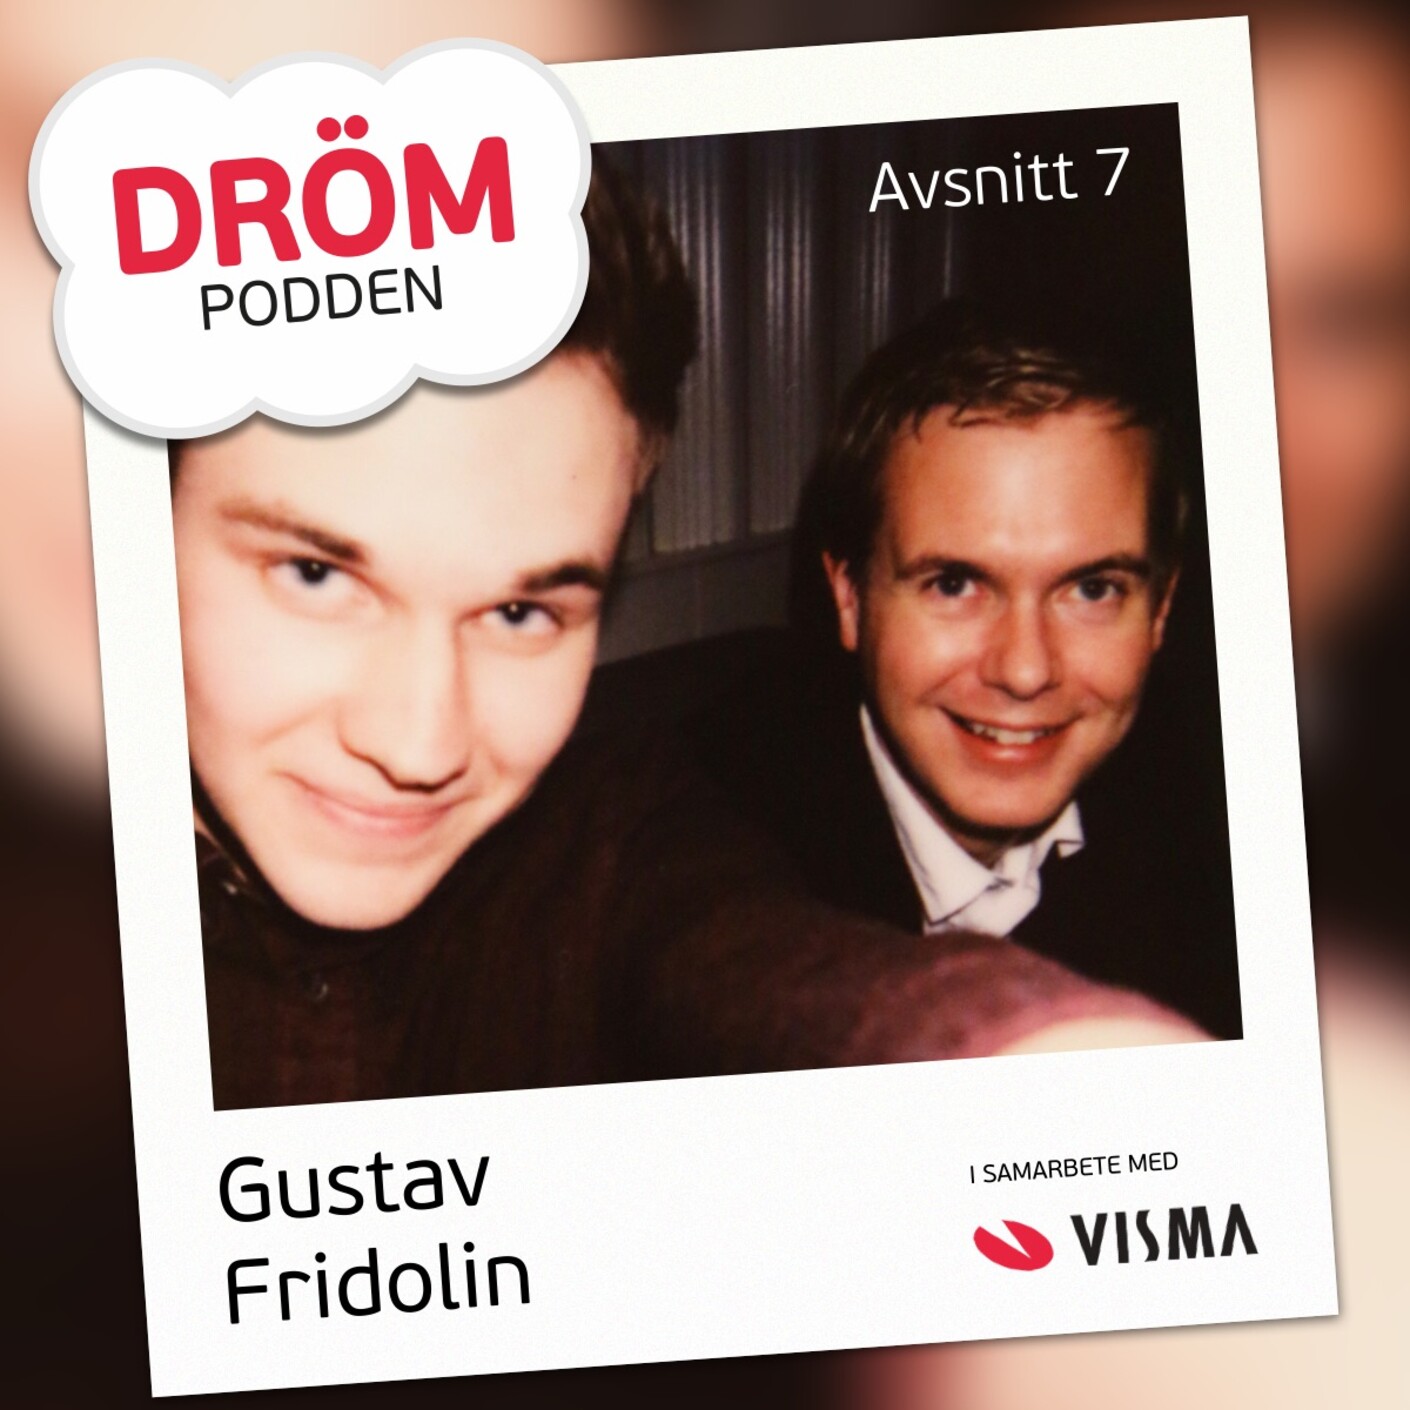 7. Gustav Fridolin